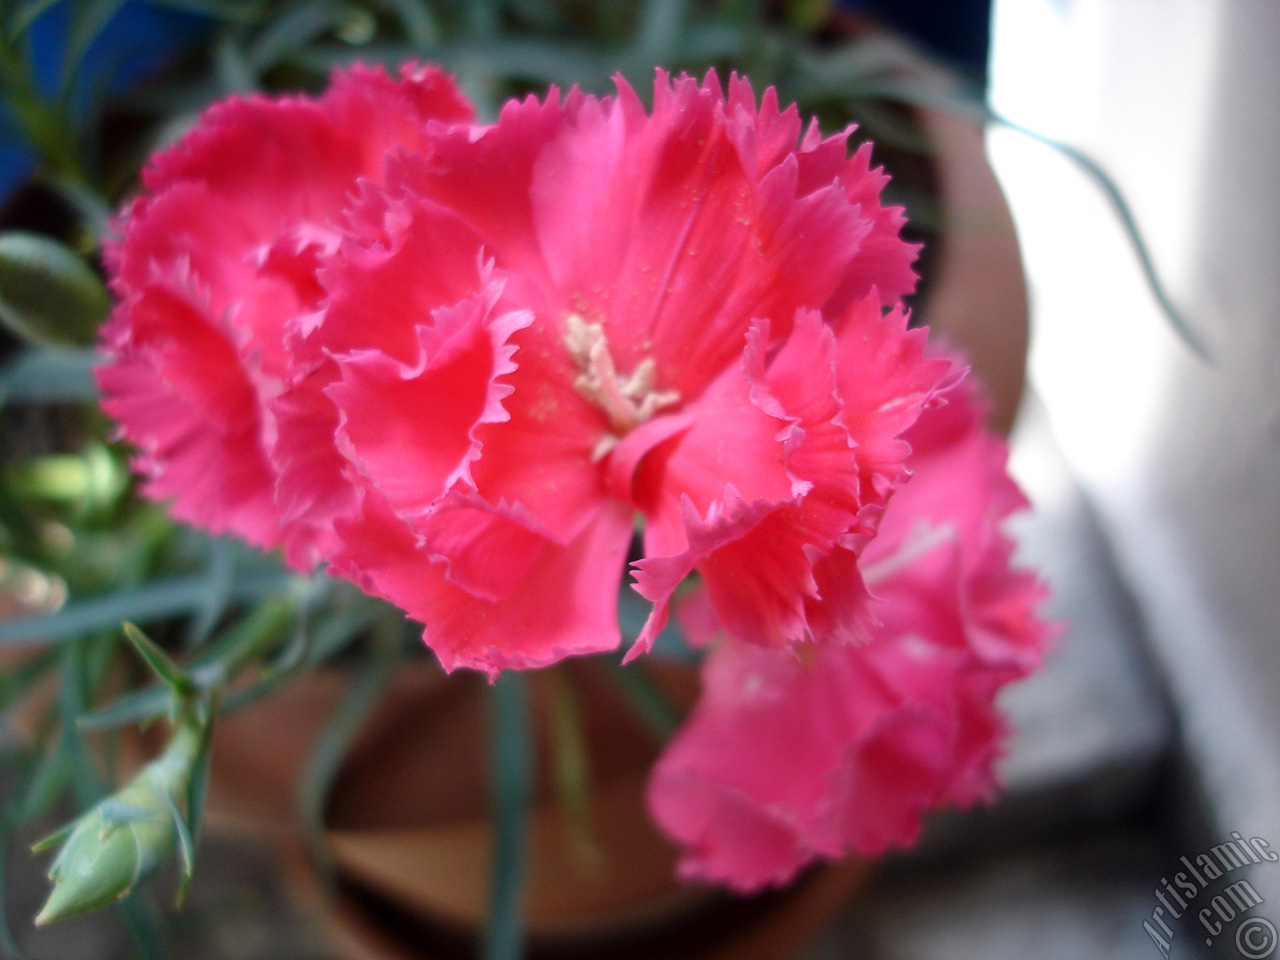 Pink color Carnation -Clove Pink- flower.
